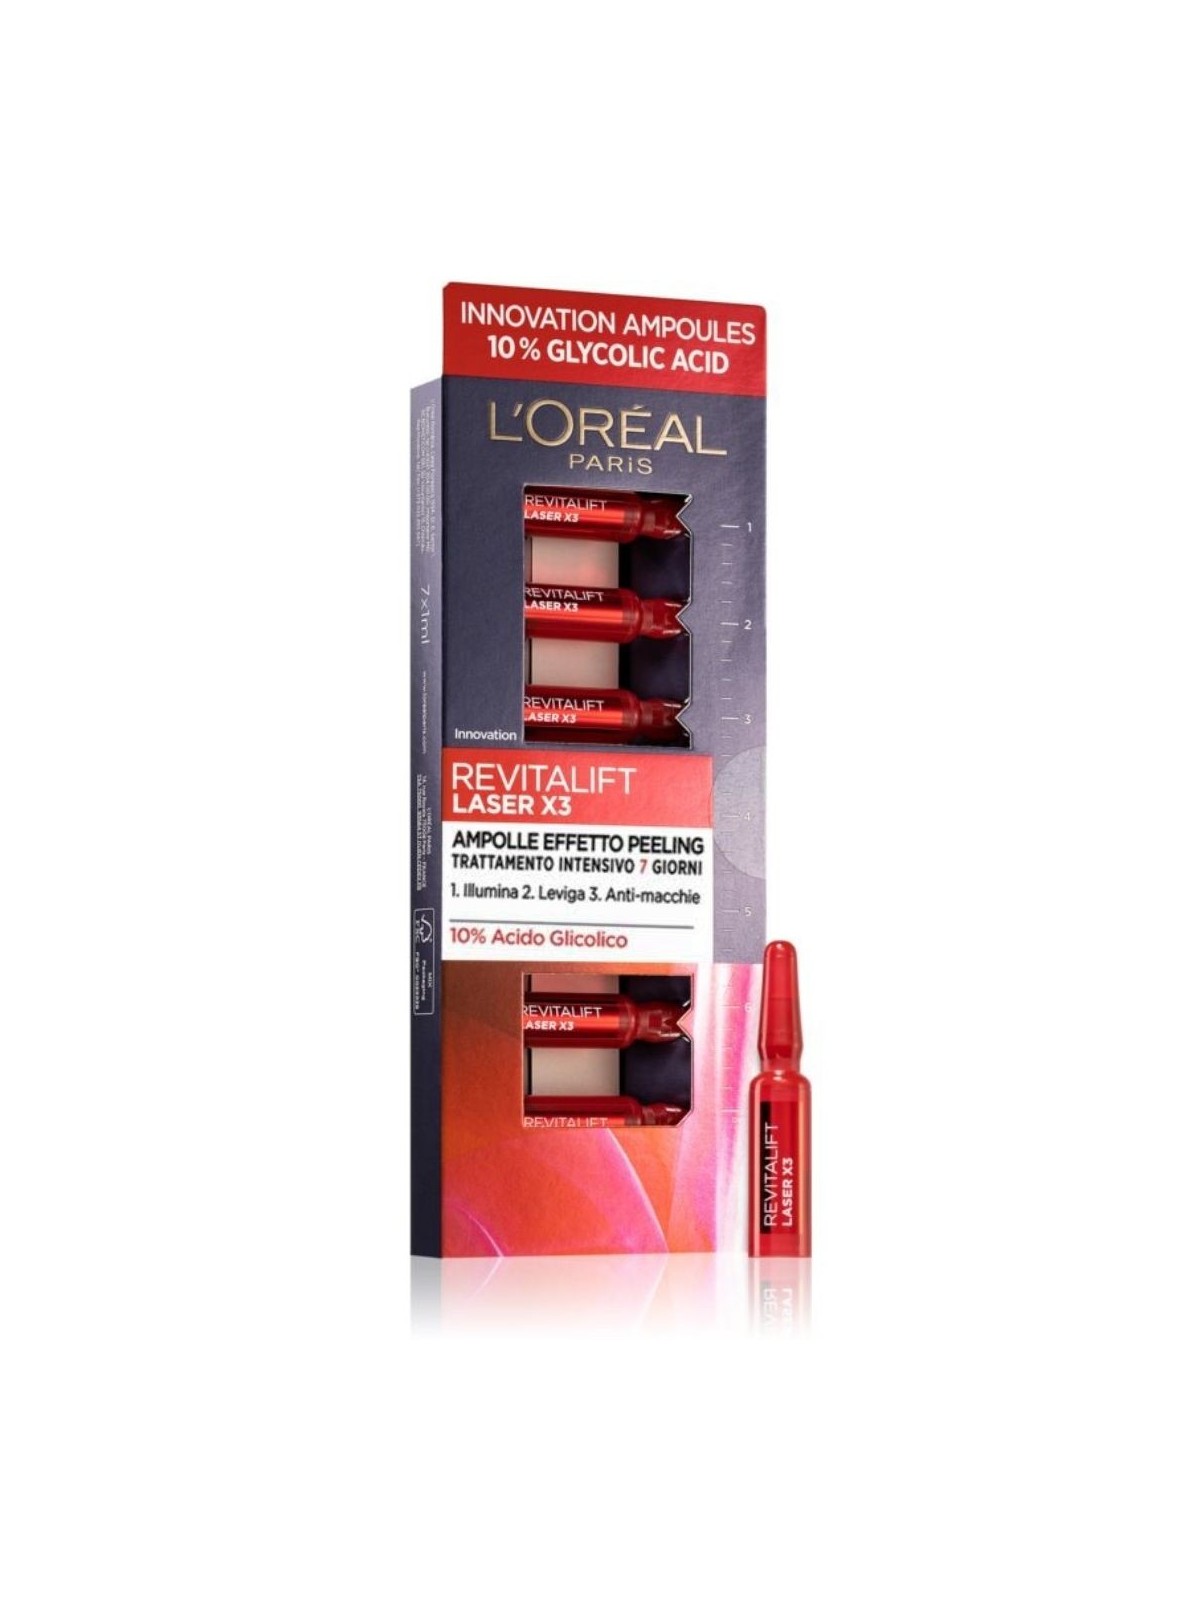 L'Oréal Paris Revitalift Laser X3 Ampolle Effetto Peeling con Acido Glicolico